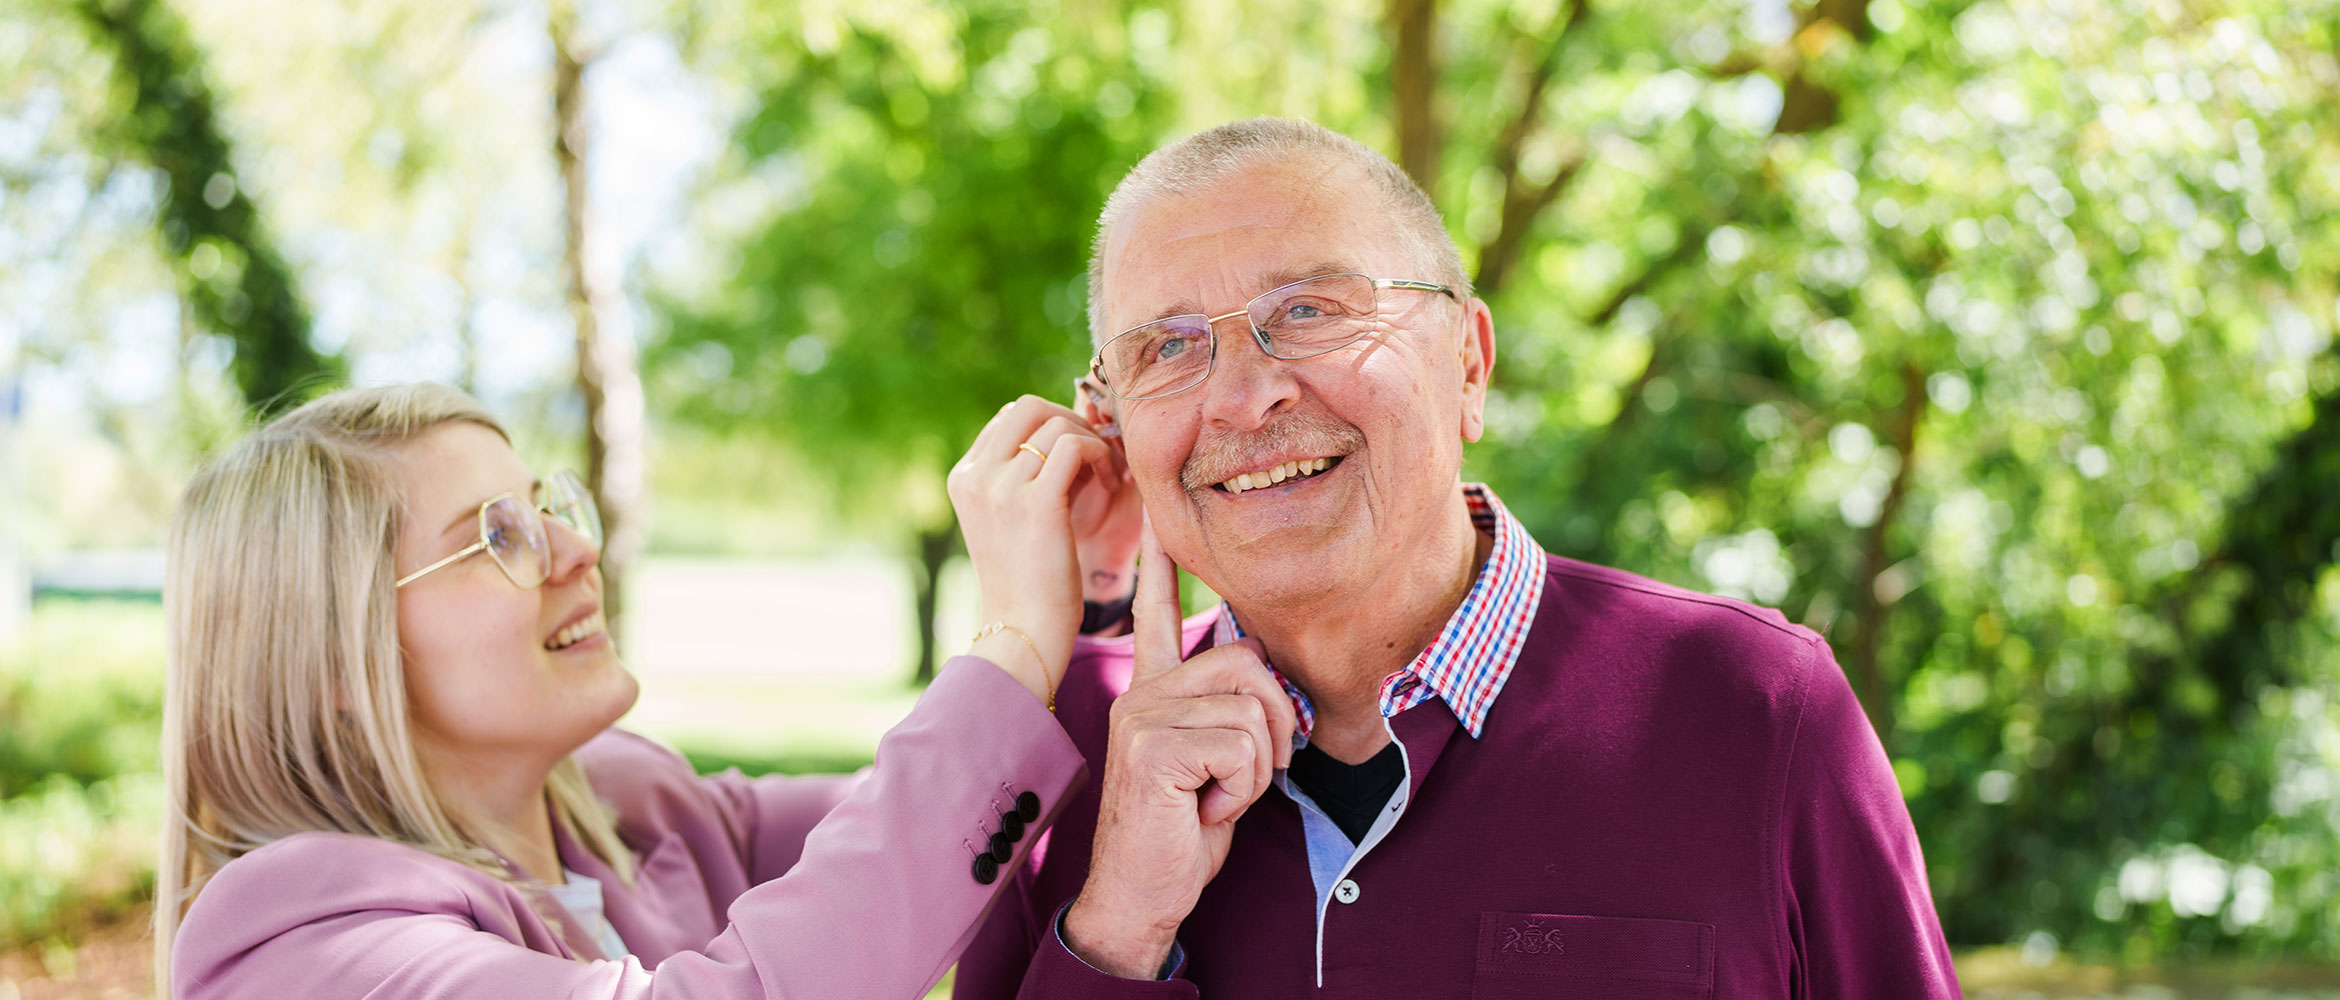 Ein älterer Herr mit Brille und einem Lächeln wird von einer jüngeren Frau mit blonden Haaren und Brille beim Anpassen eines Hörgeräts unterstützt. Sie befinden sich in einem parkähnlichen Umfeld mit Bäumen im Hintergrund.